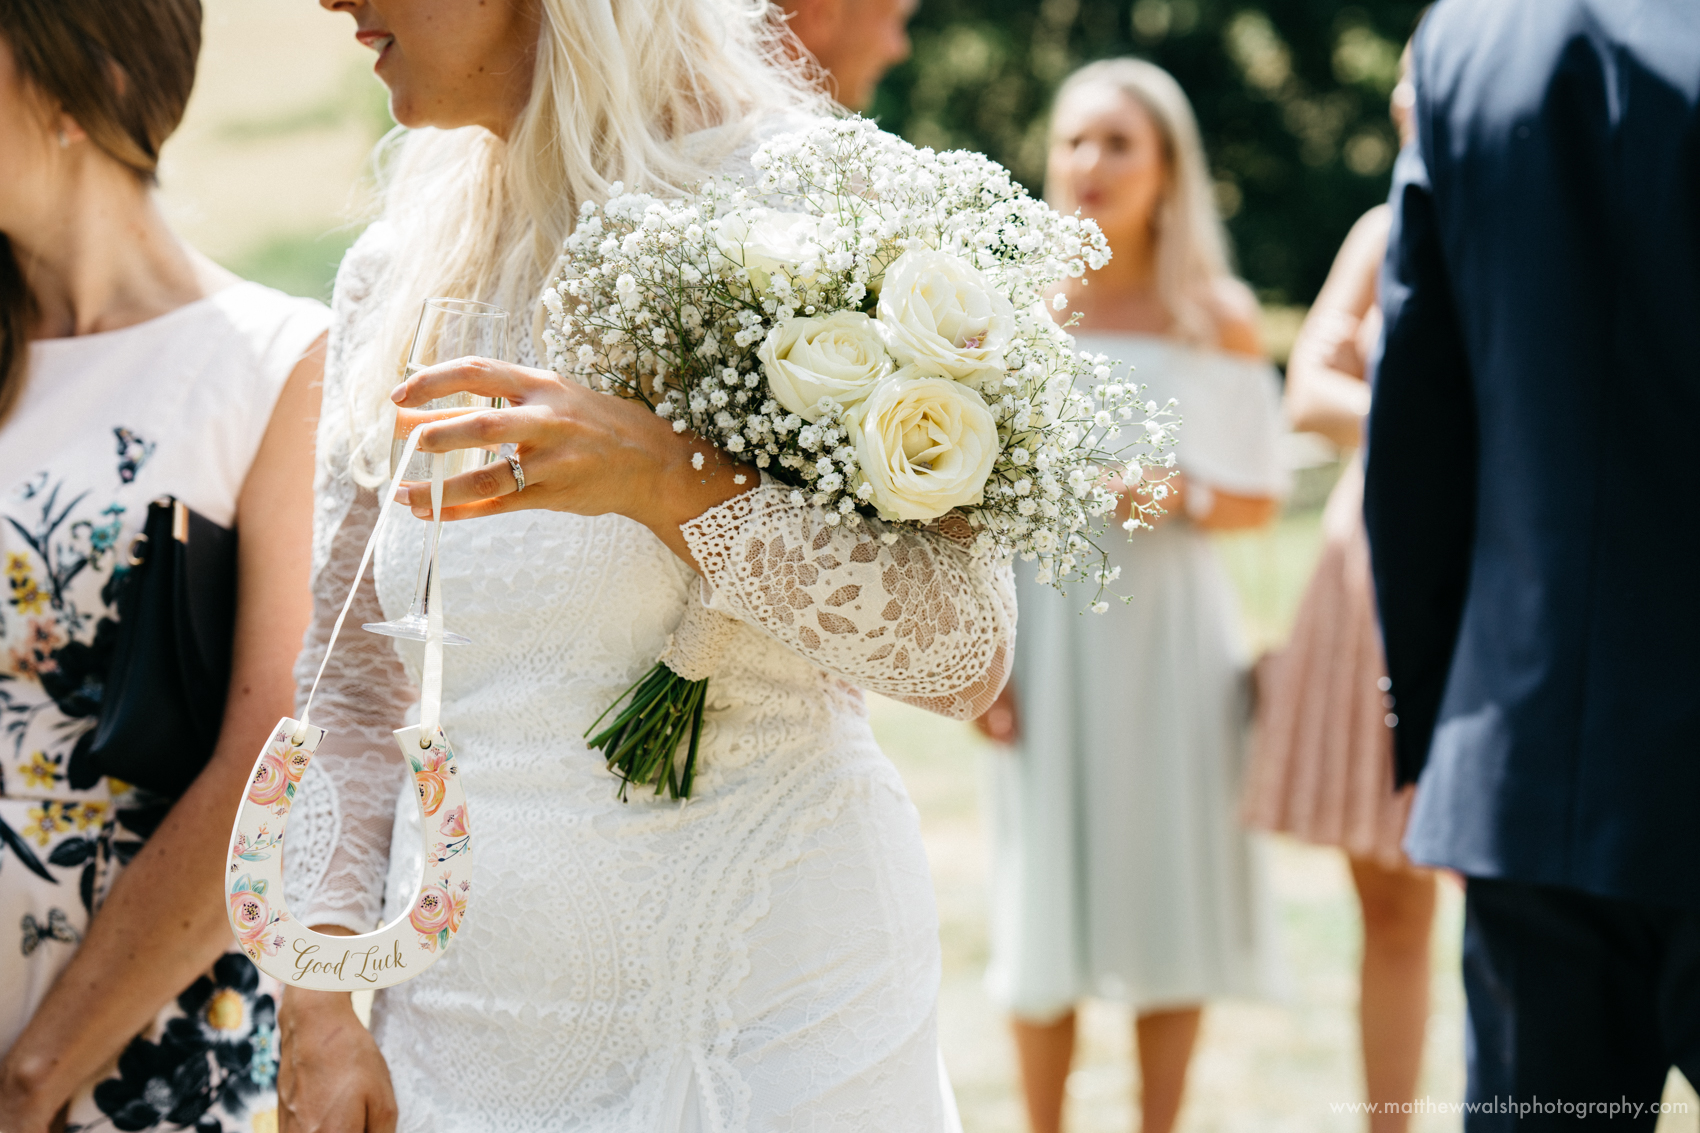 The brides stylish floral bouquet 